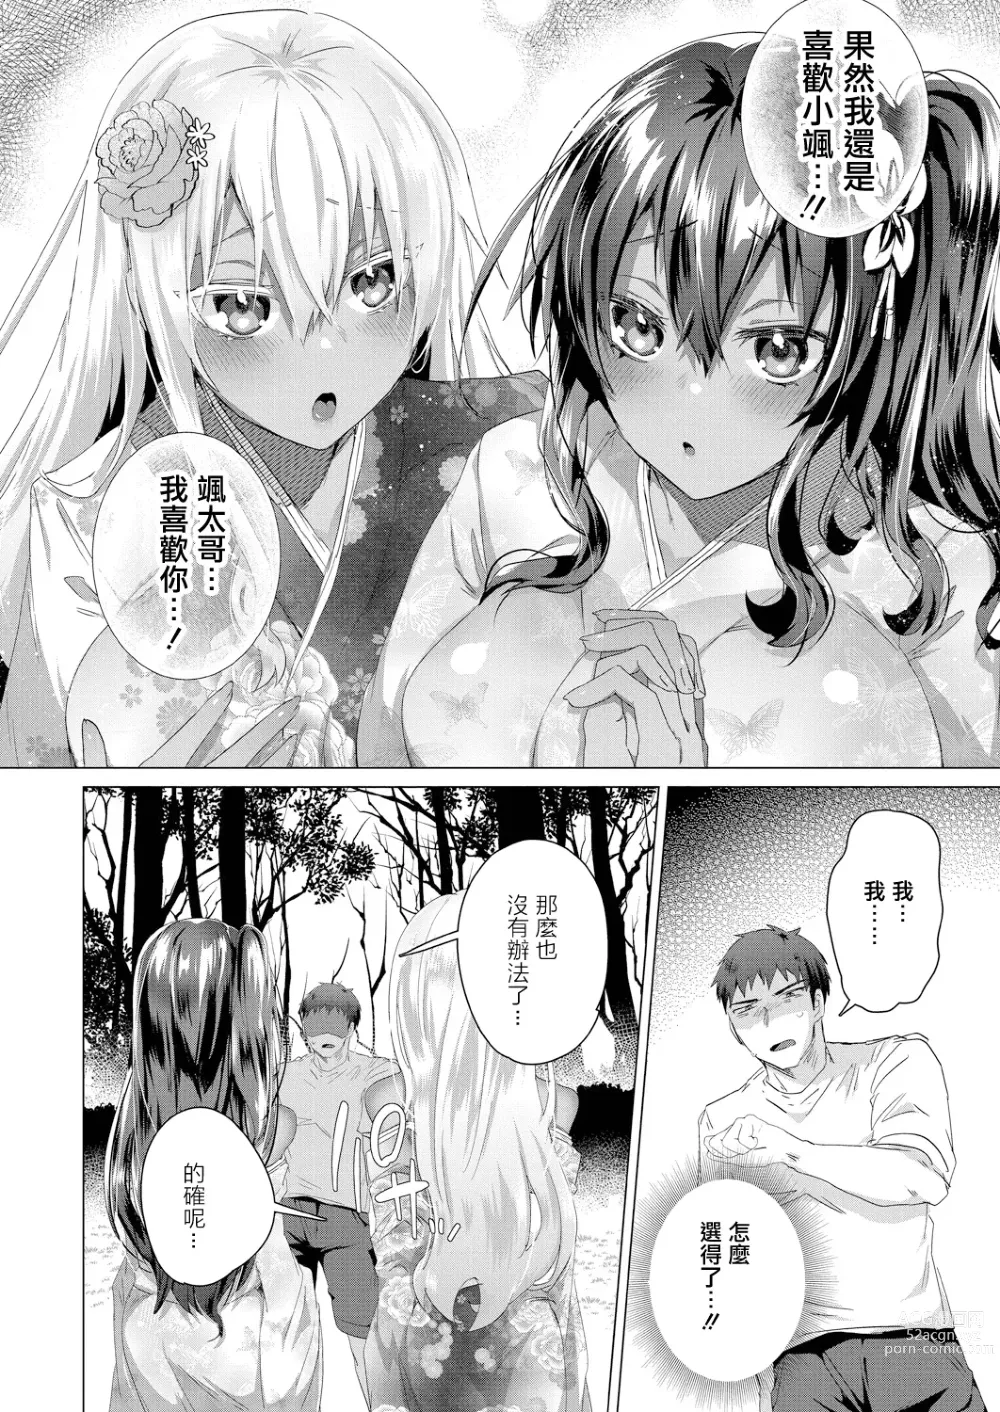 Page 4 of manga Komugiiro no Natsu-tachi Ch. 3